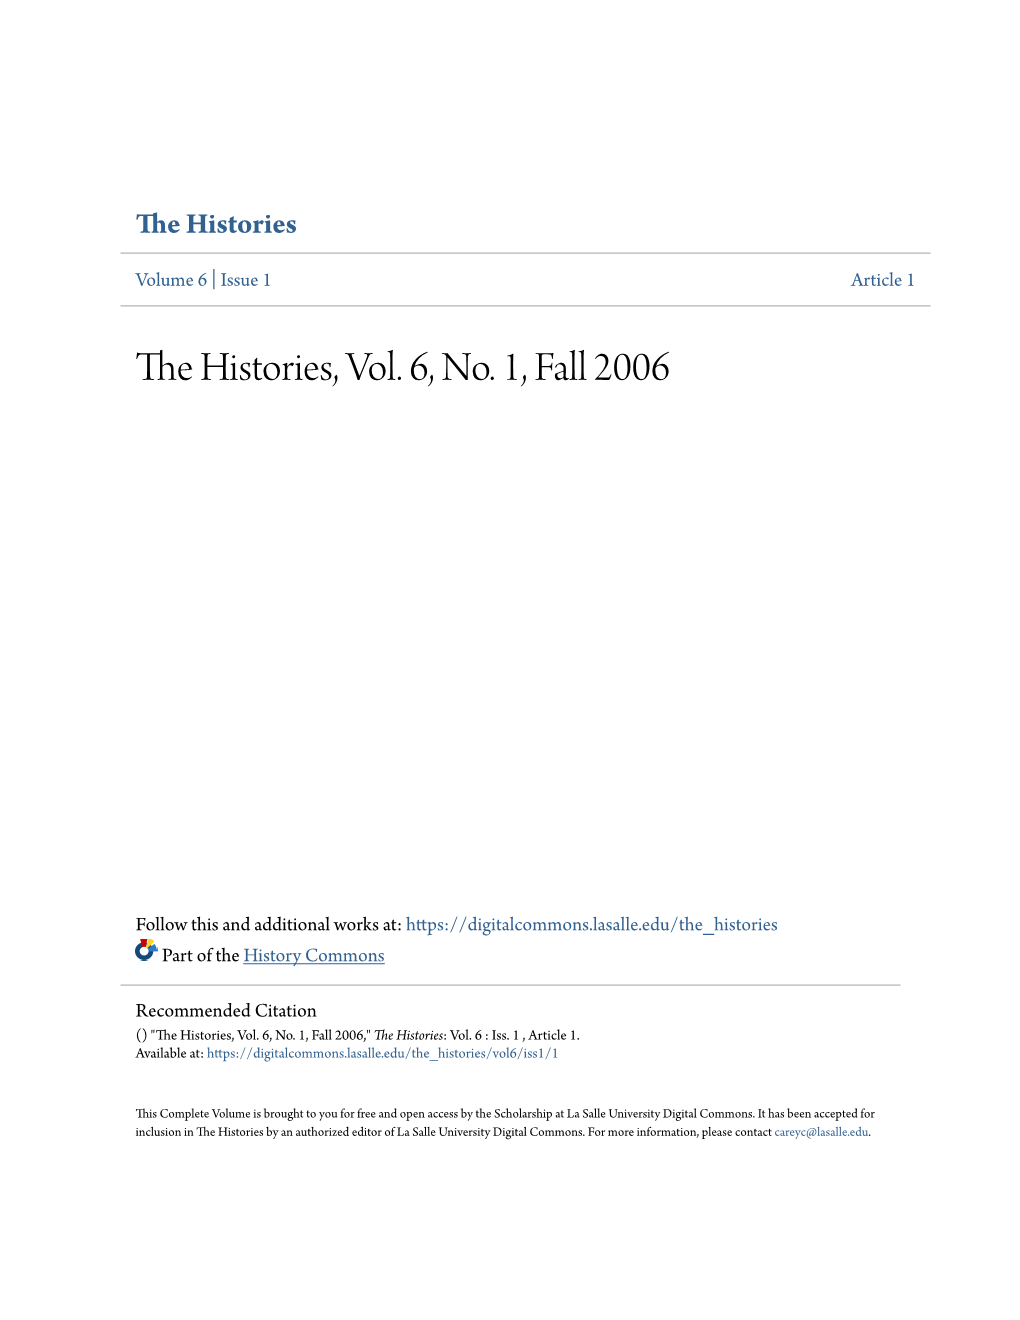 The Histories, Vol. 6, No. 1, Fall 2006